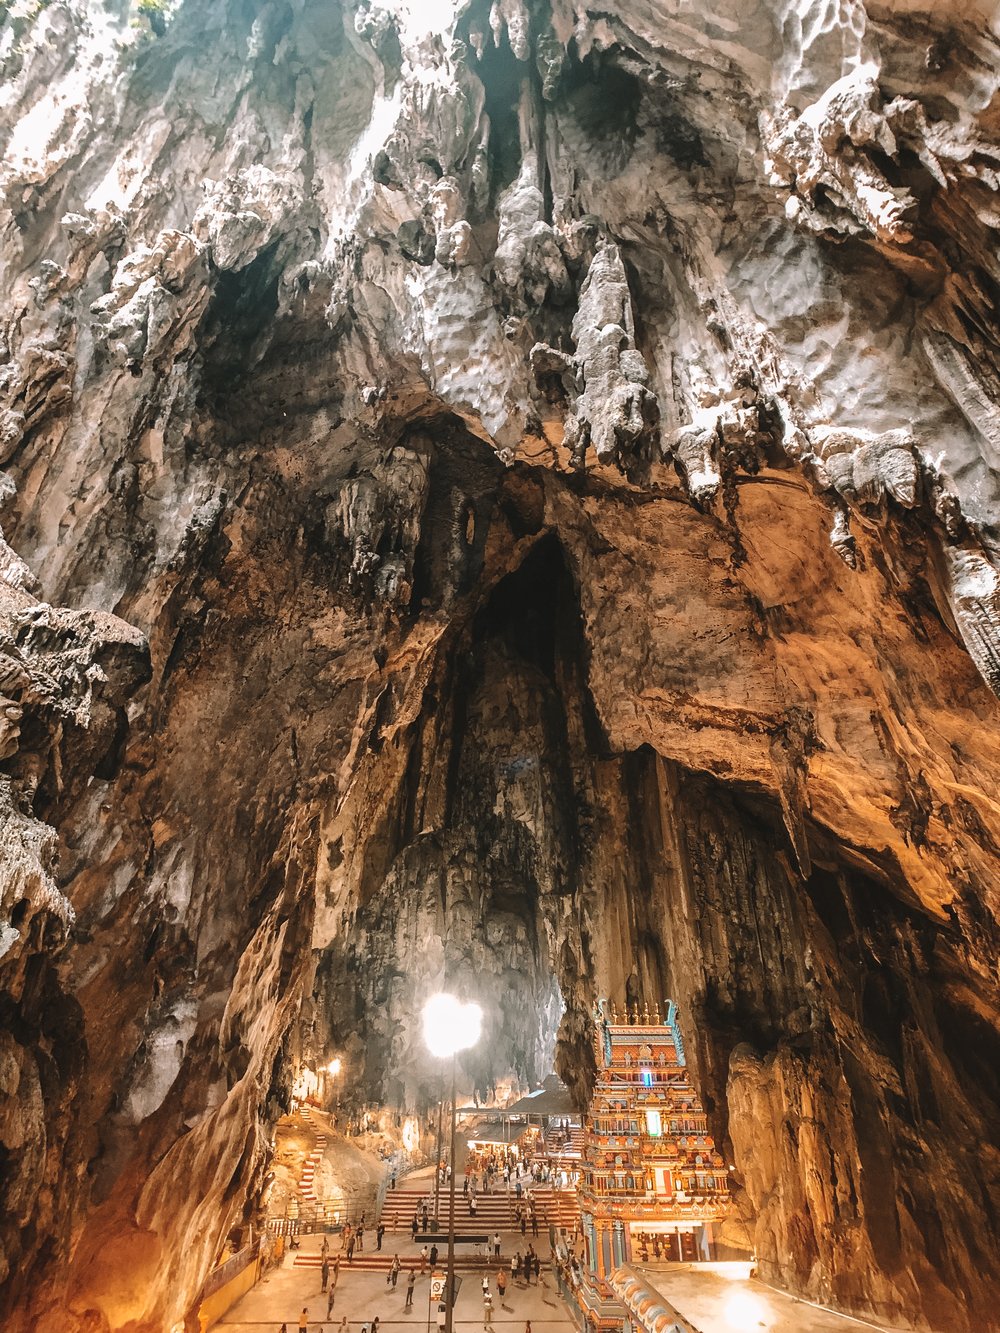 What the inside of the Batu Caves in Kuala Lumpur looks like